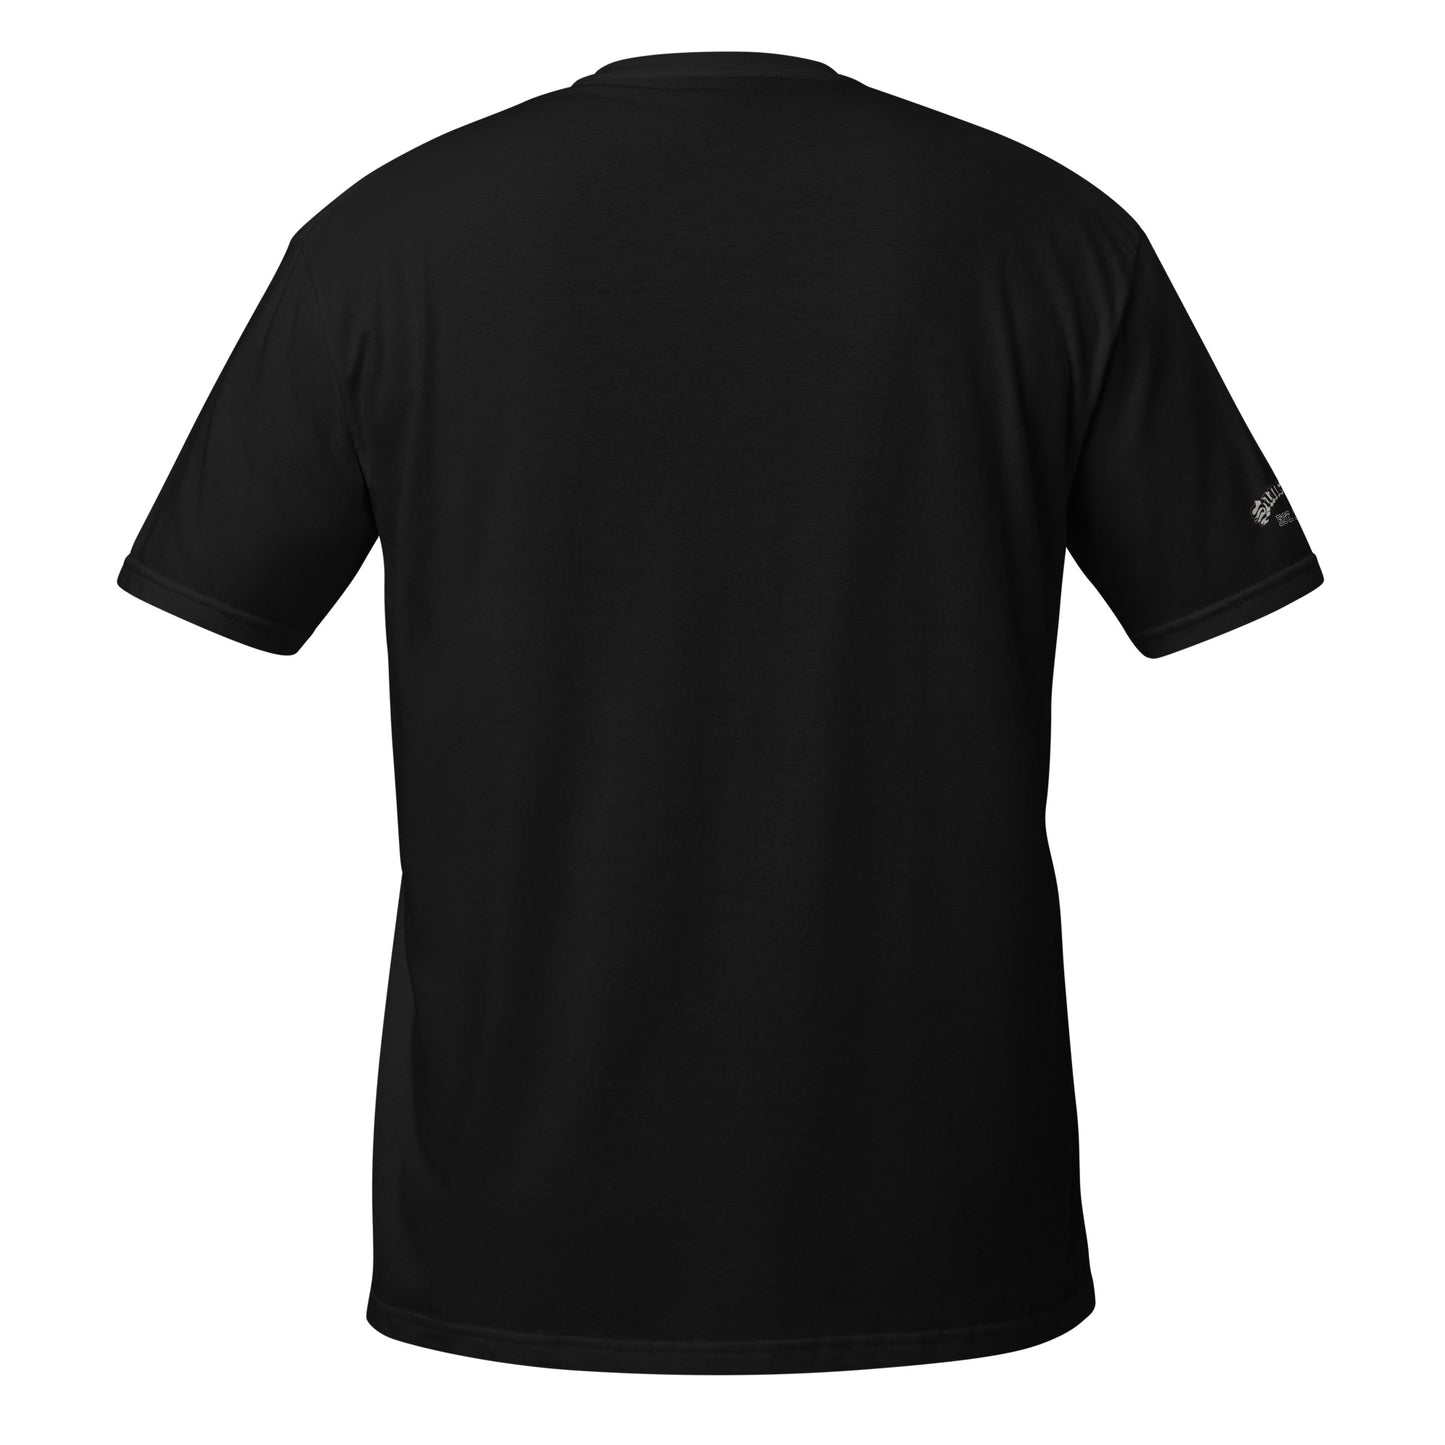 YESHUA- Short-Sleeve Unisex T-Shirt